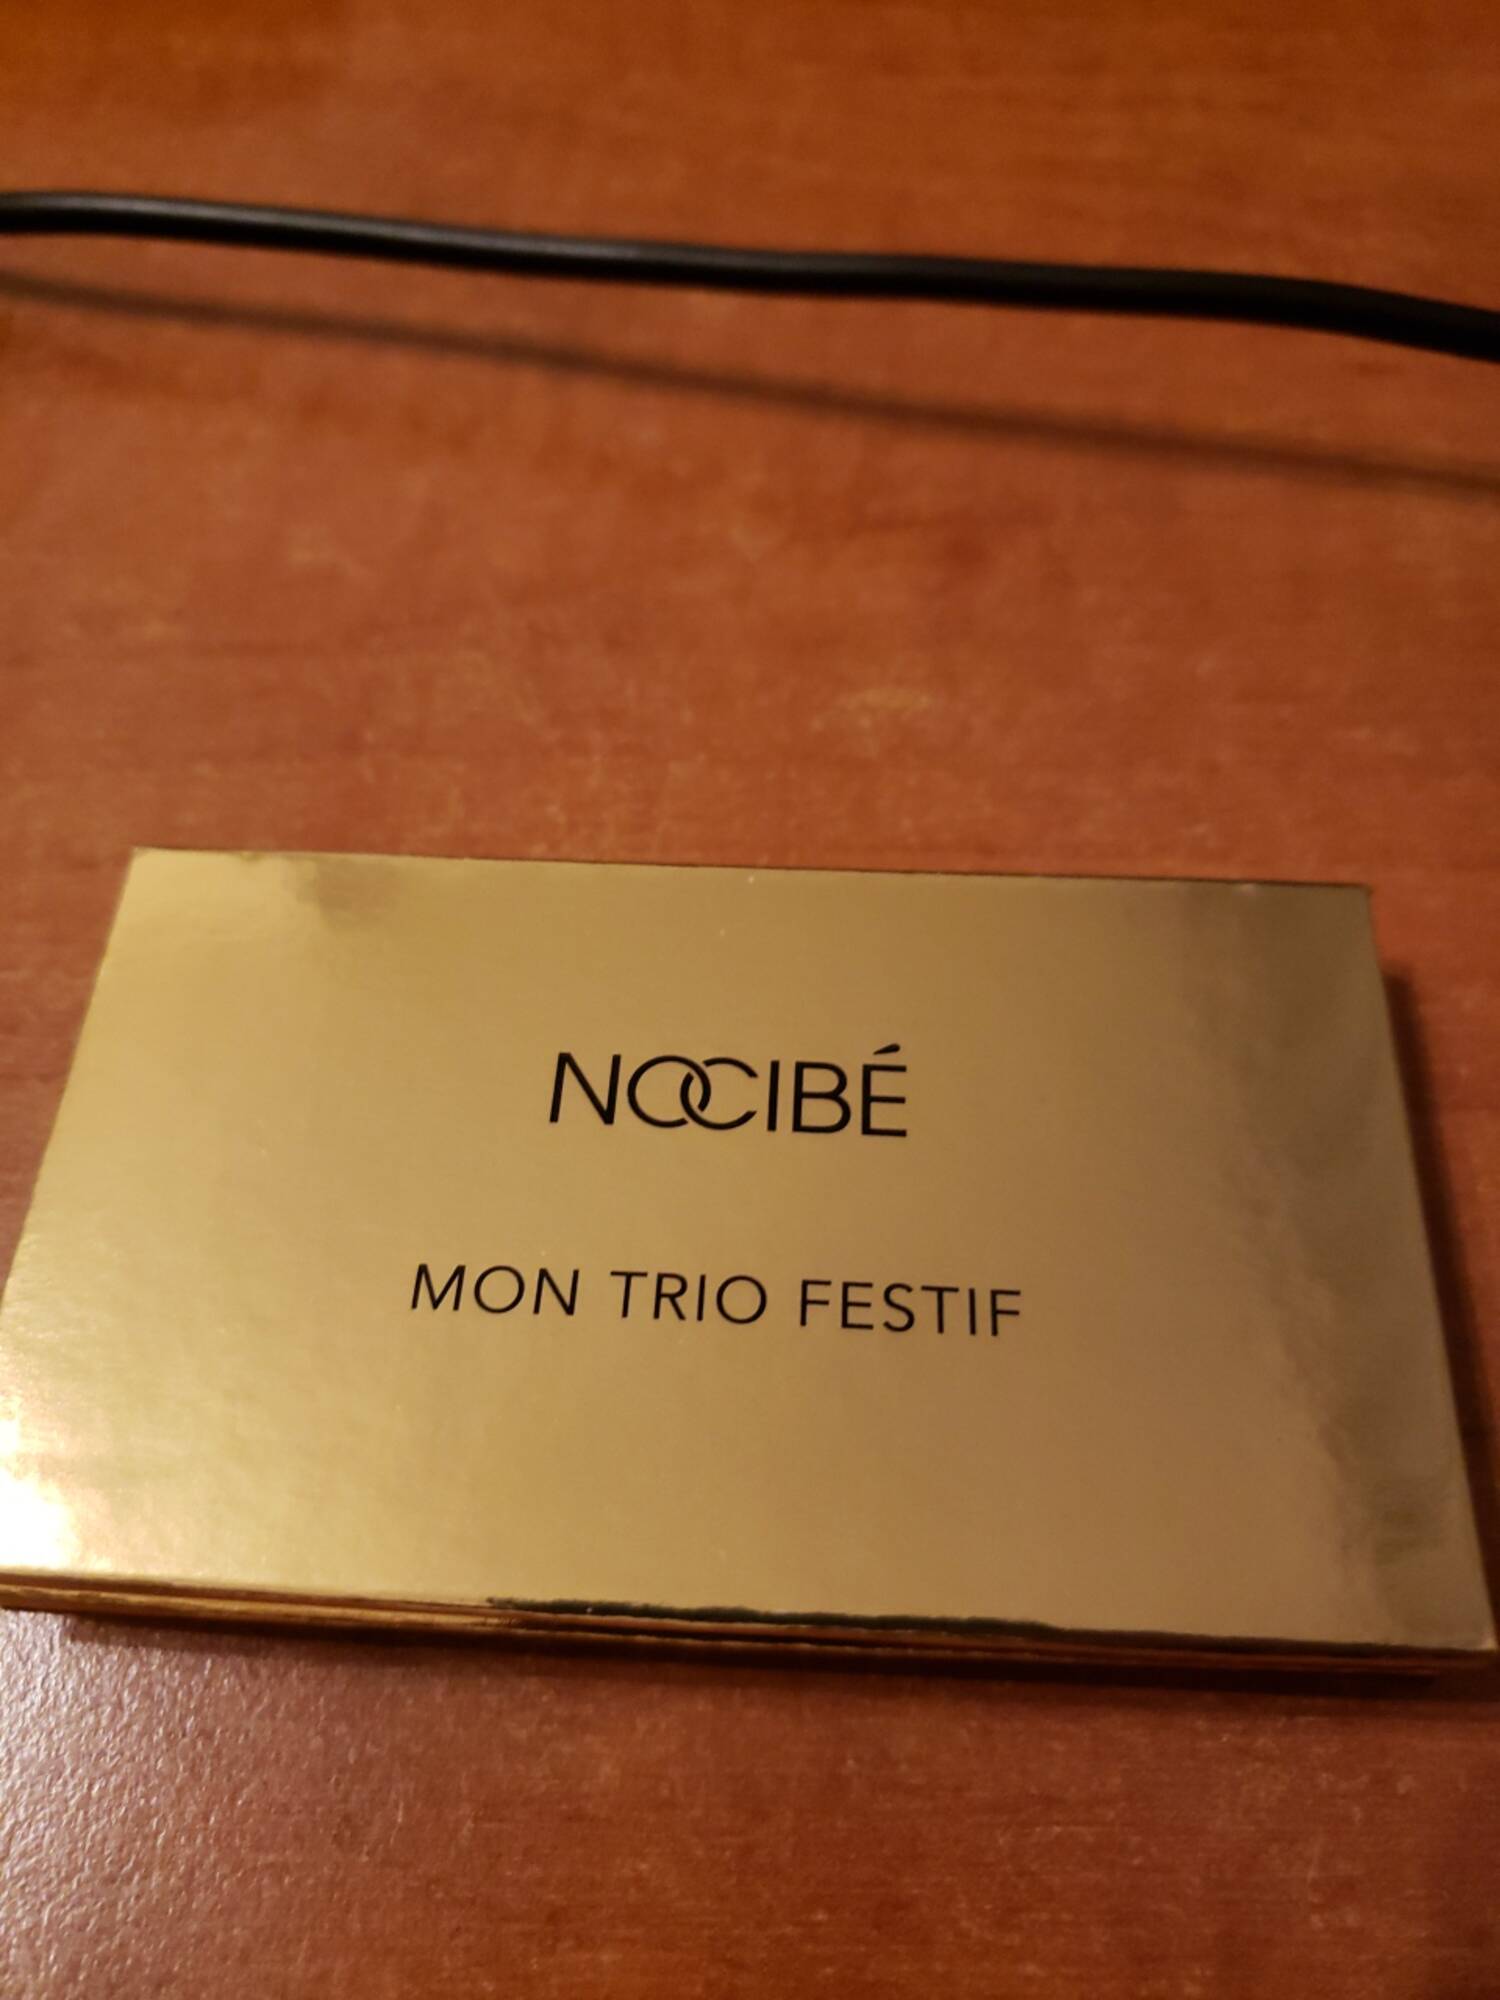 NOCIBÉ - Mon trio festif - Palette de 3 fards à paupières